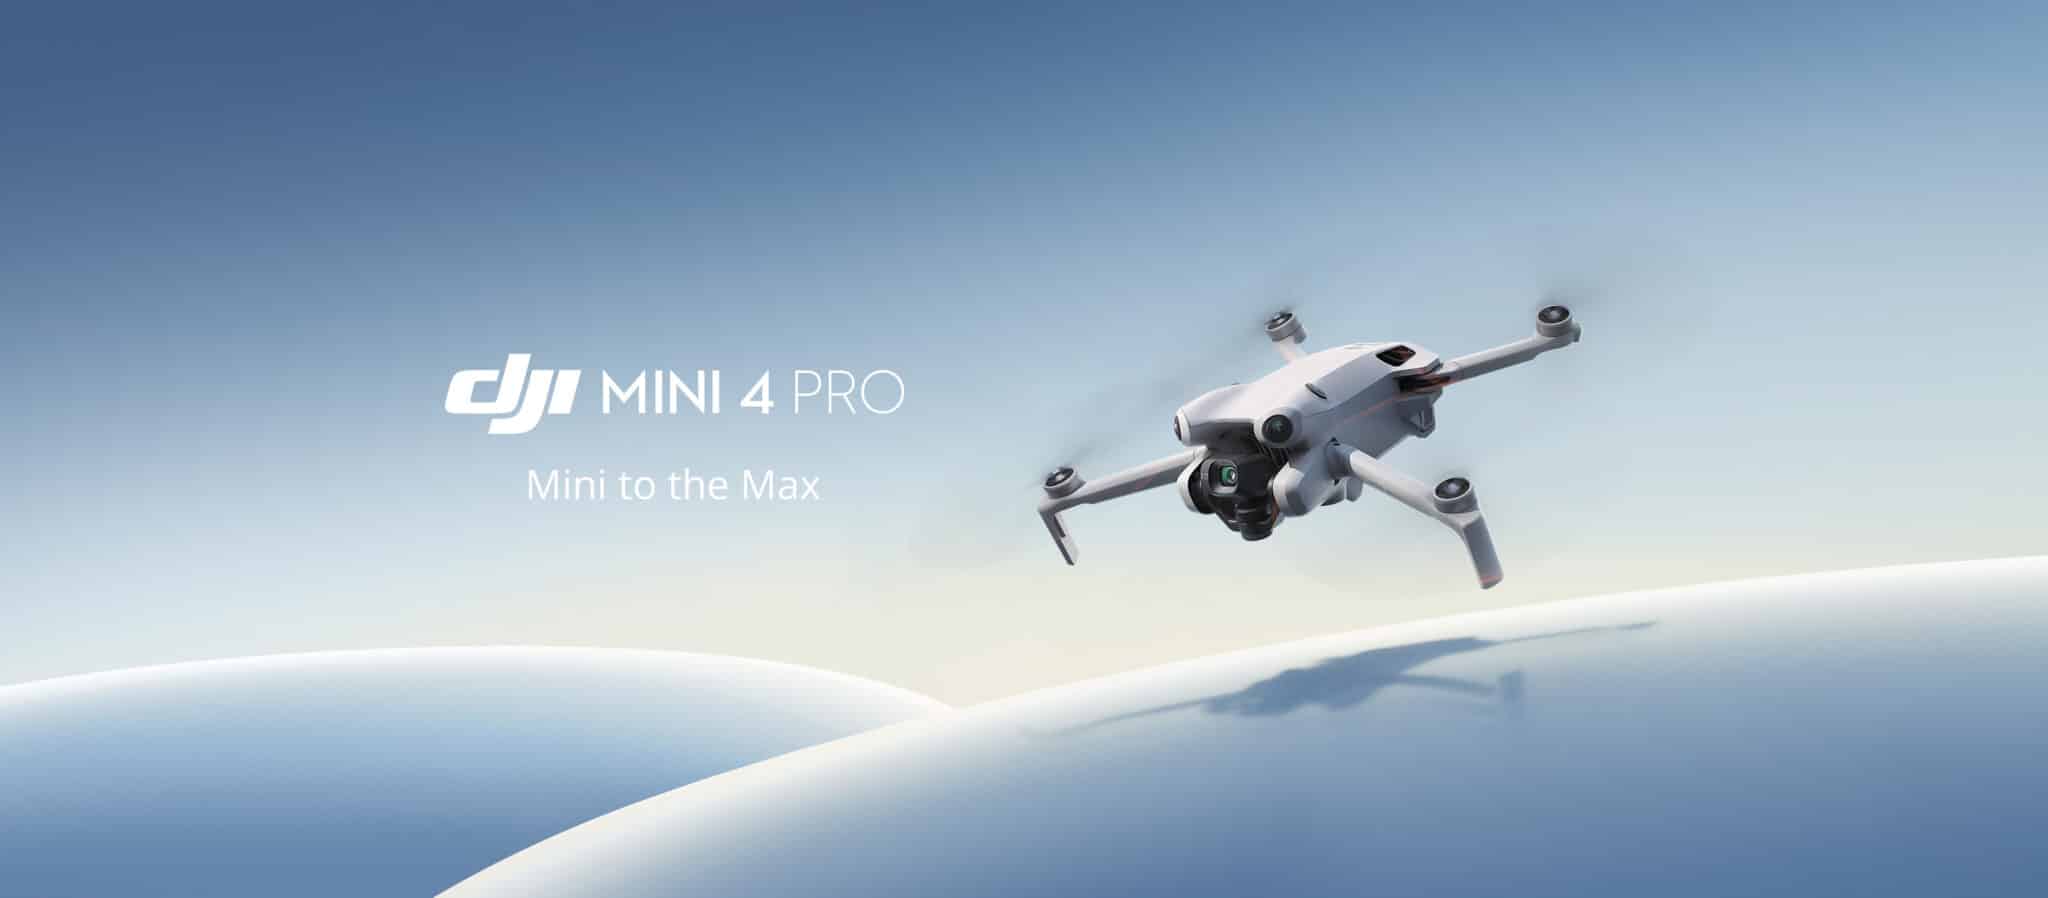 Új mini eszközt dobott piacra az ismert dróngyártó